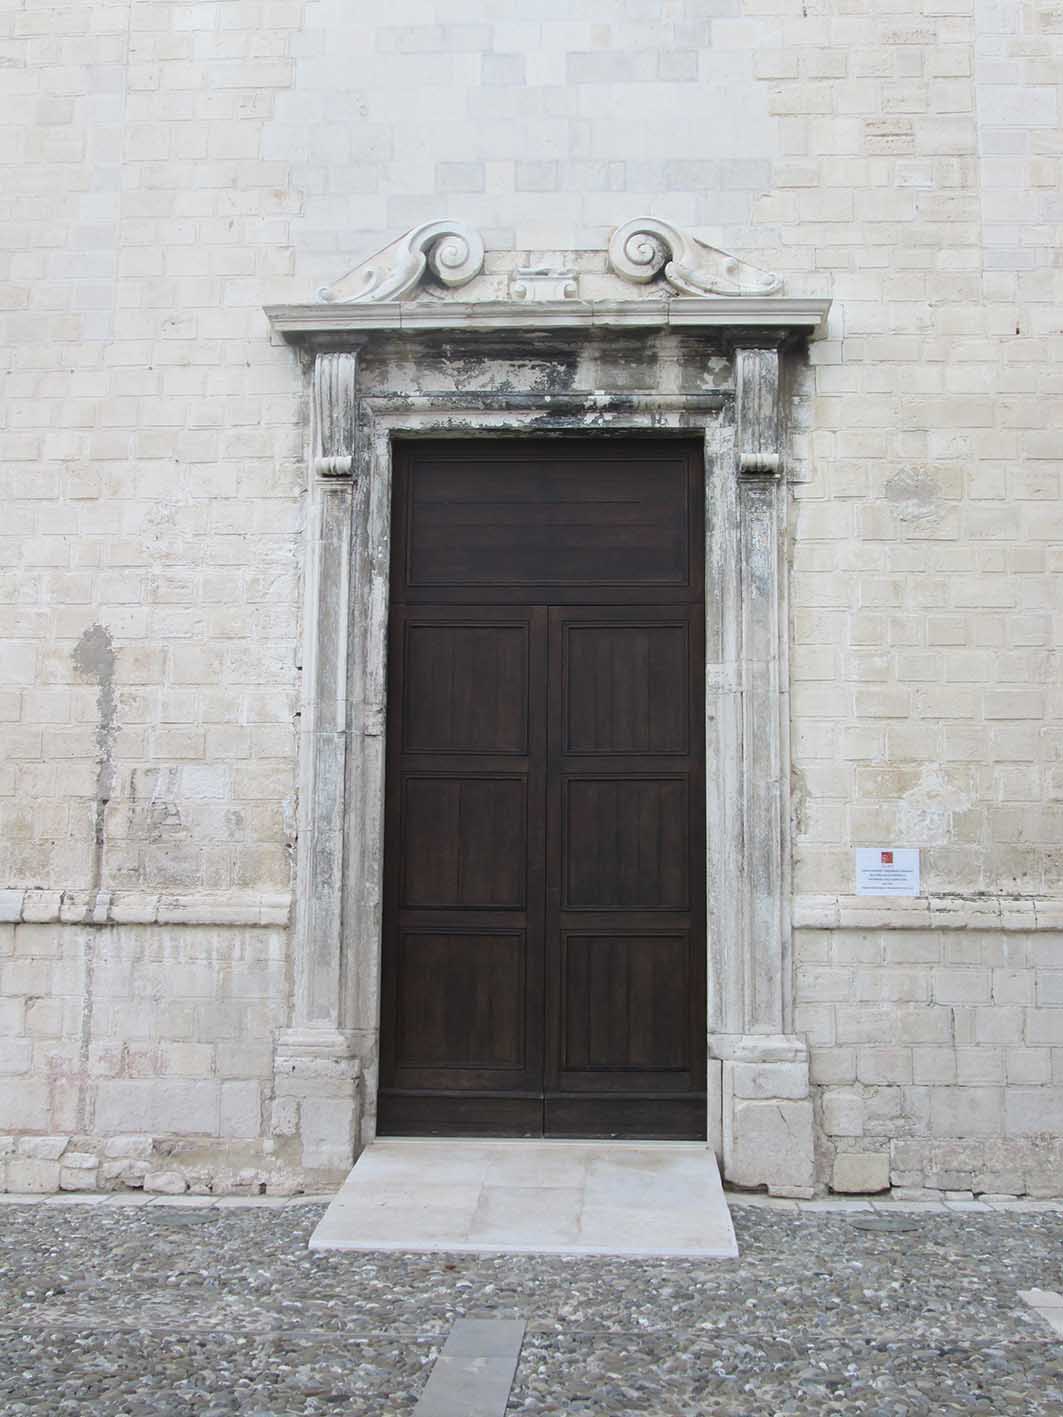 Chiesa di S.Francesco alla Scarpa (chiesa) - Bari (BA) 